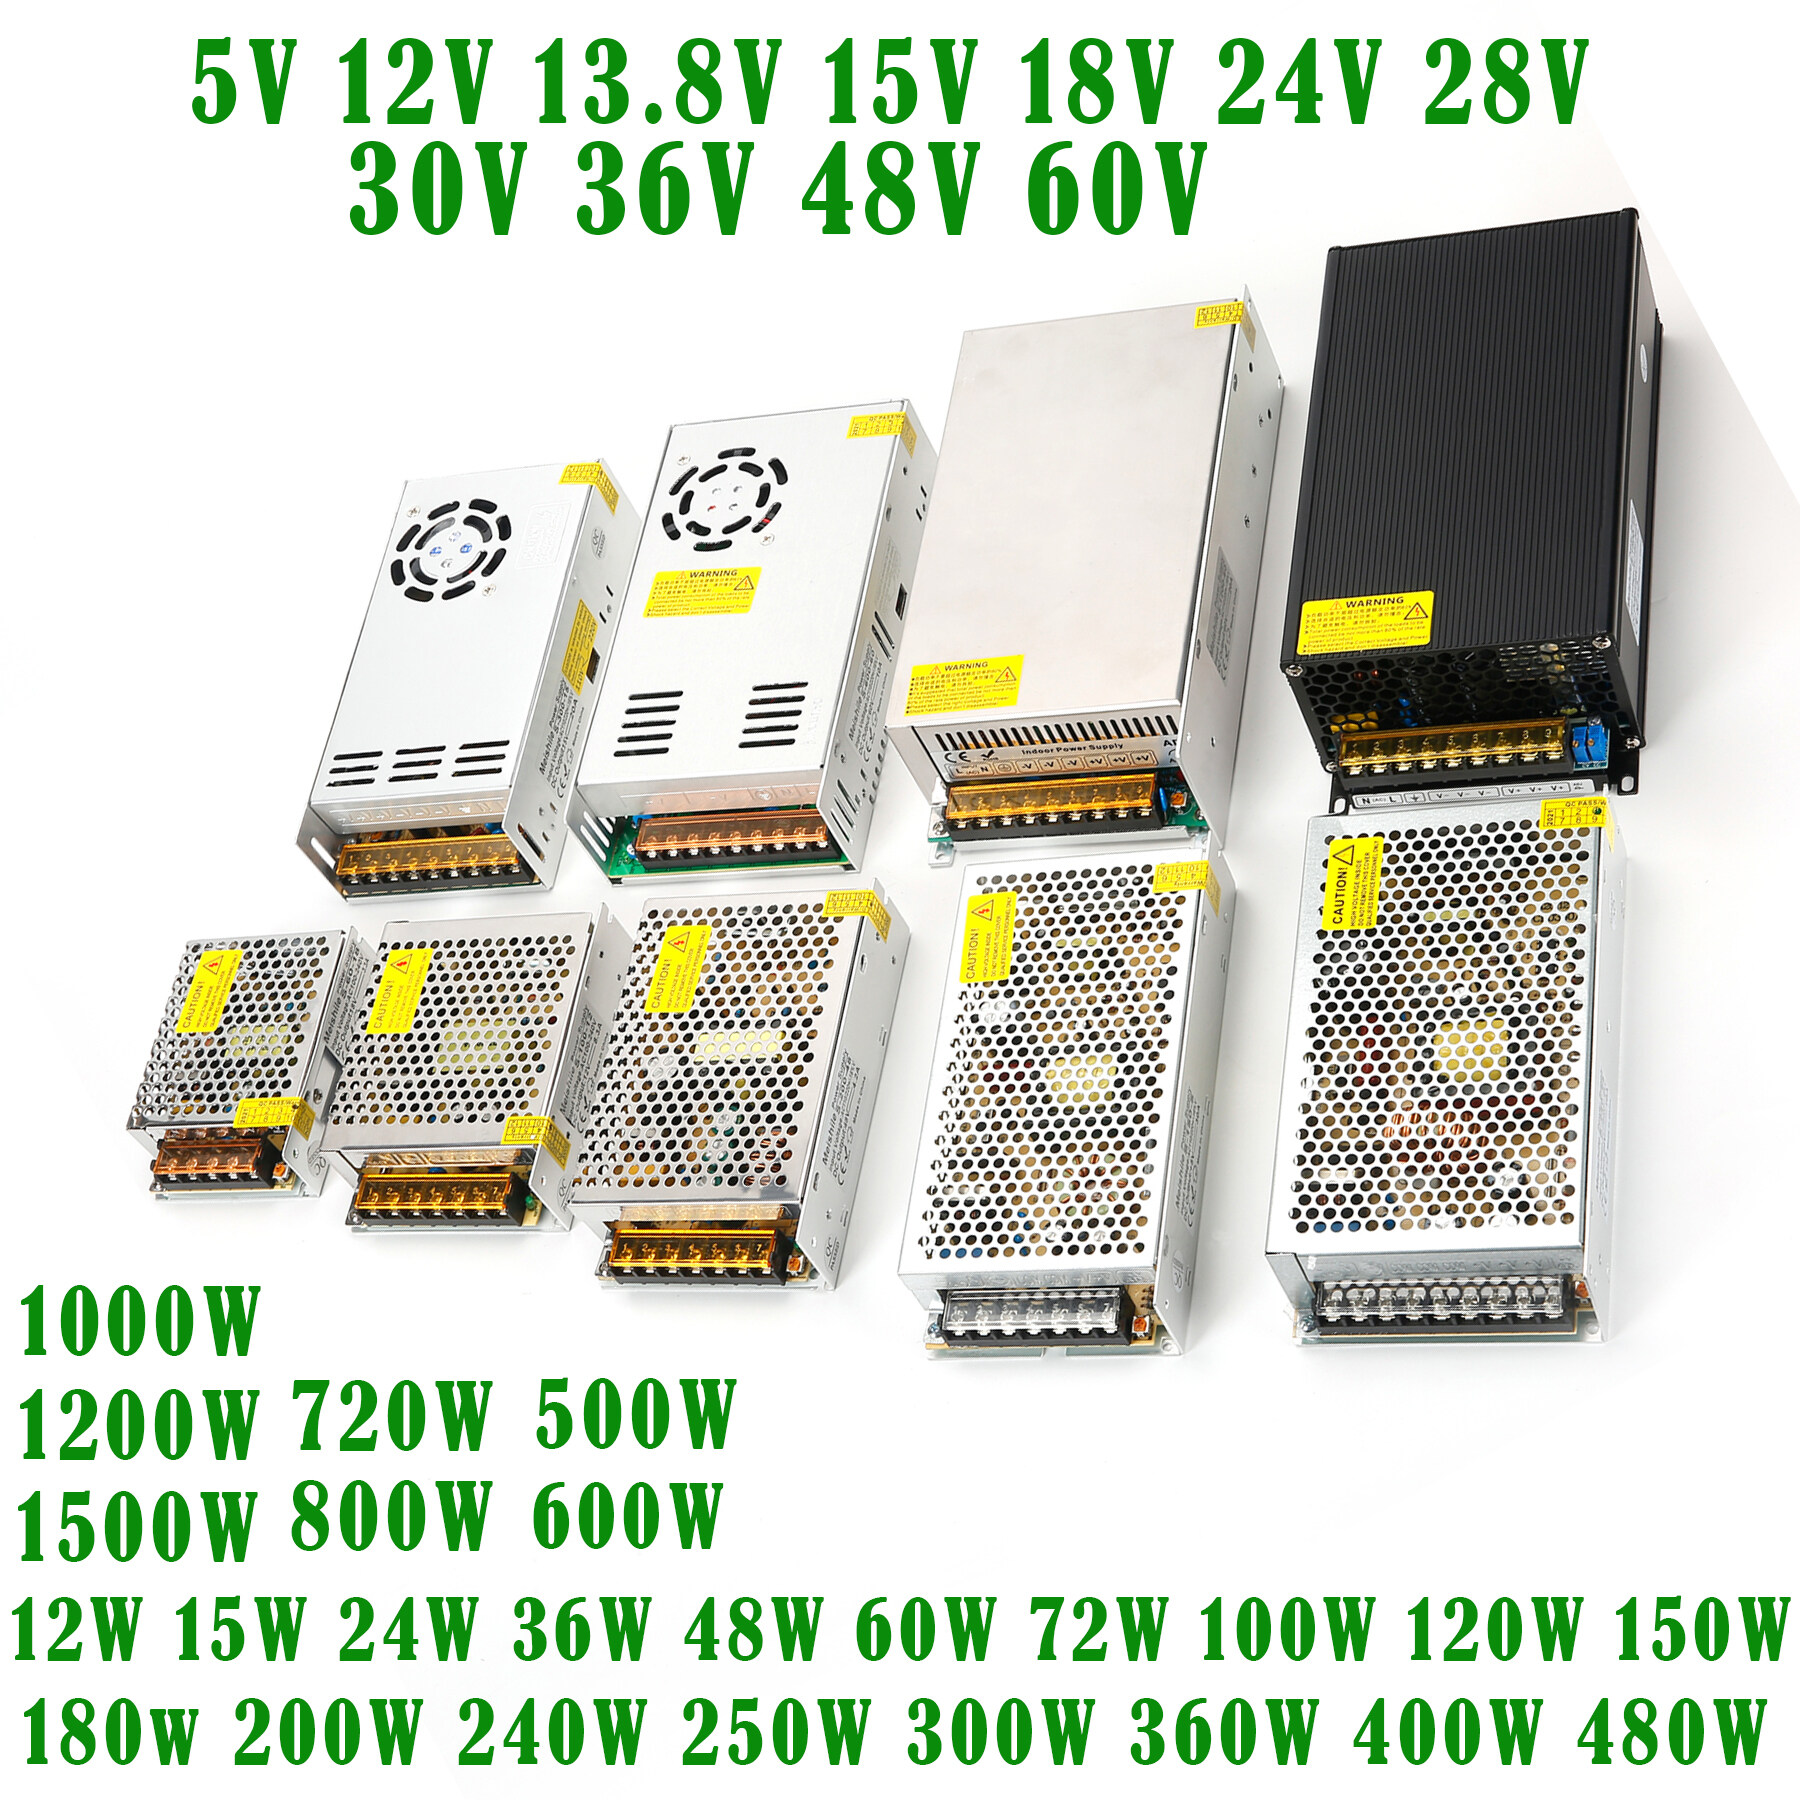 Output Voltage: 15V Utini Single Output 120w Switching Power Supply 24volt 5a CCTV Camera Power Supplies ac110V/220V dc 5V 7.5V 12V 15V 24v 48V S-120